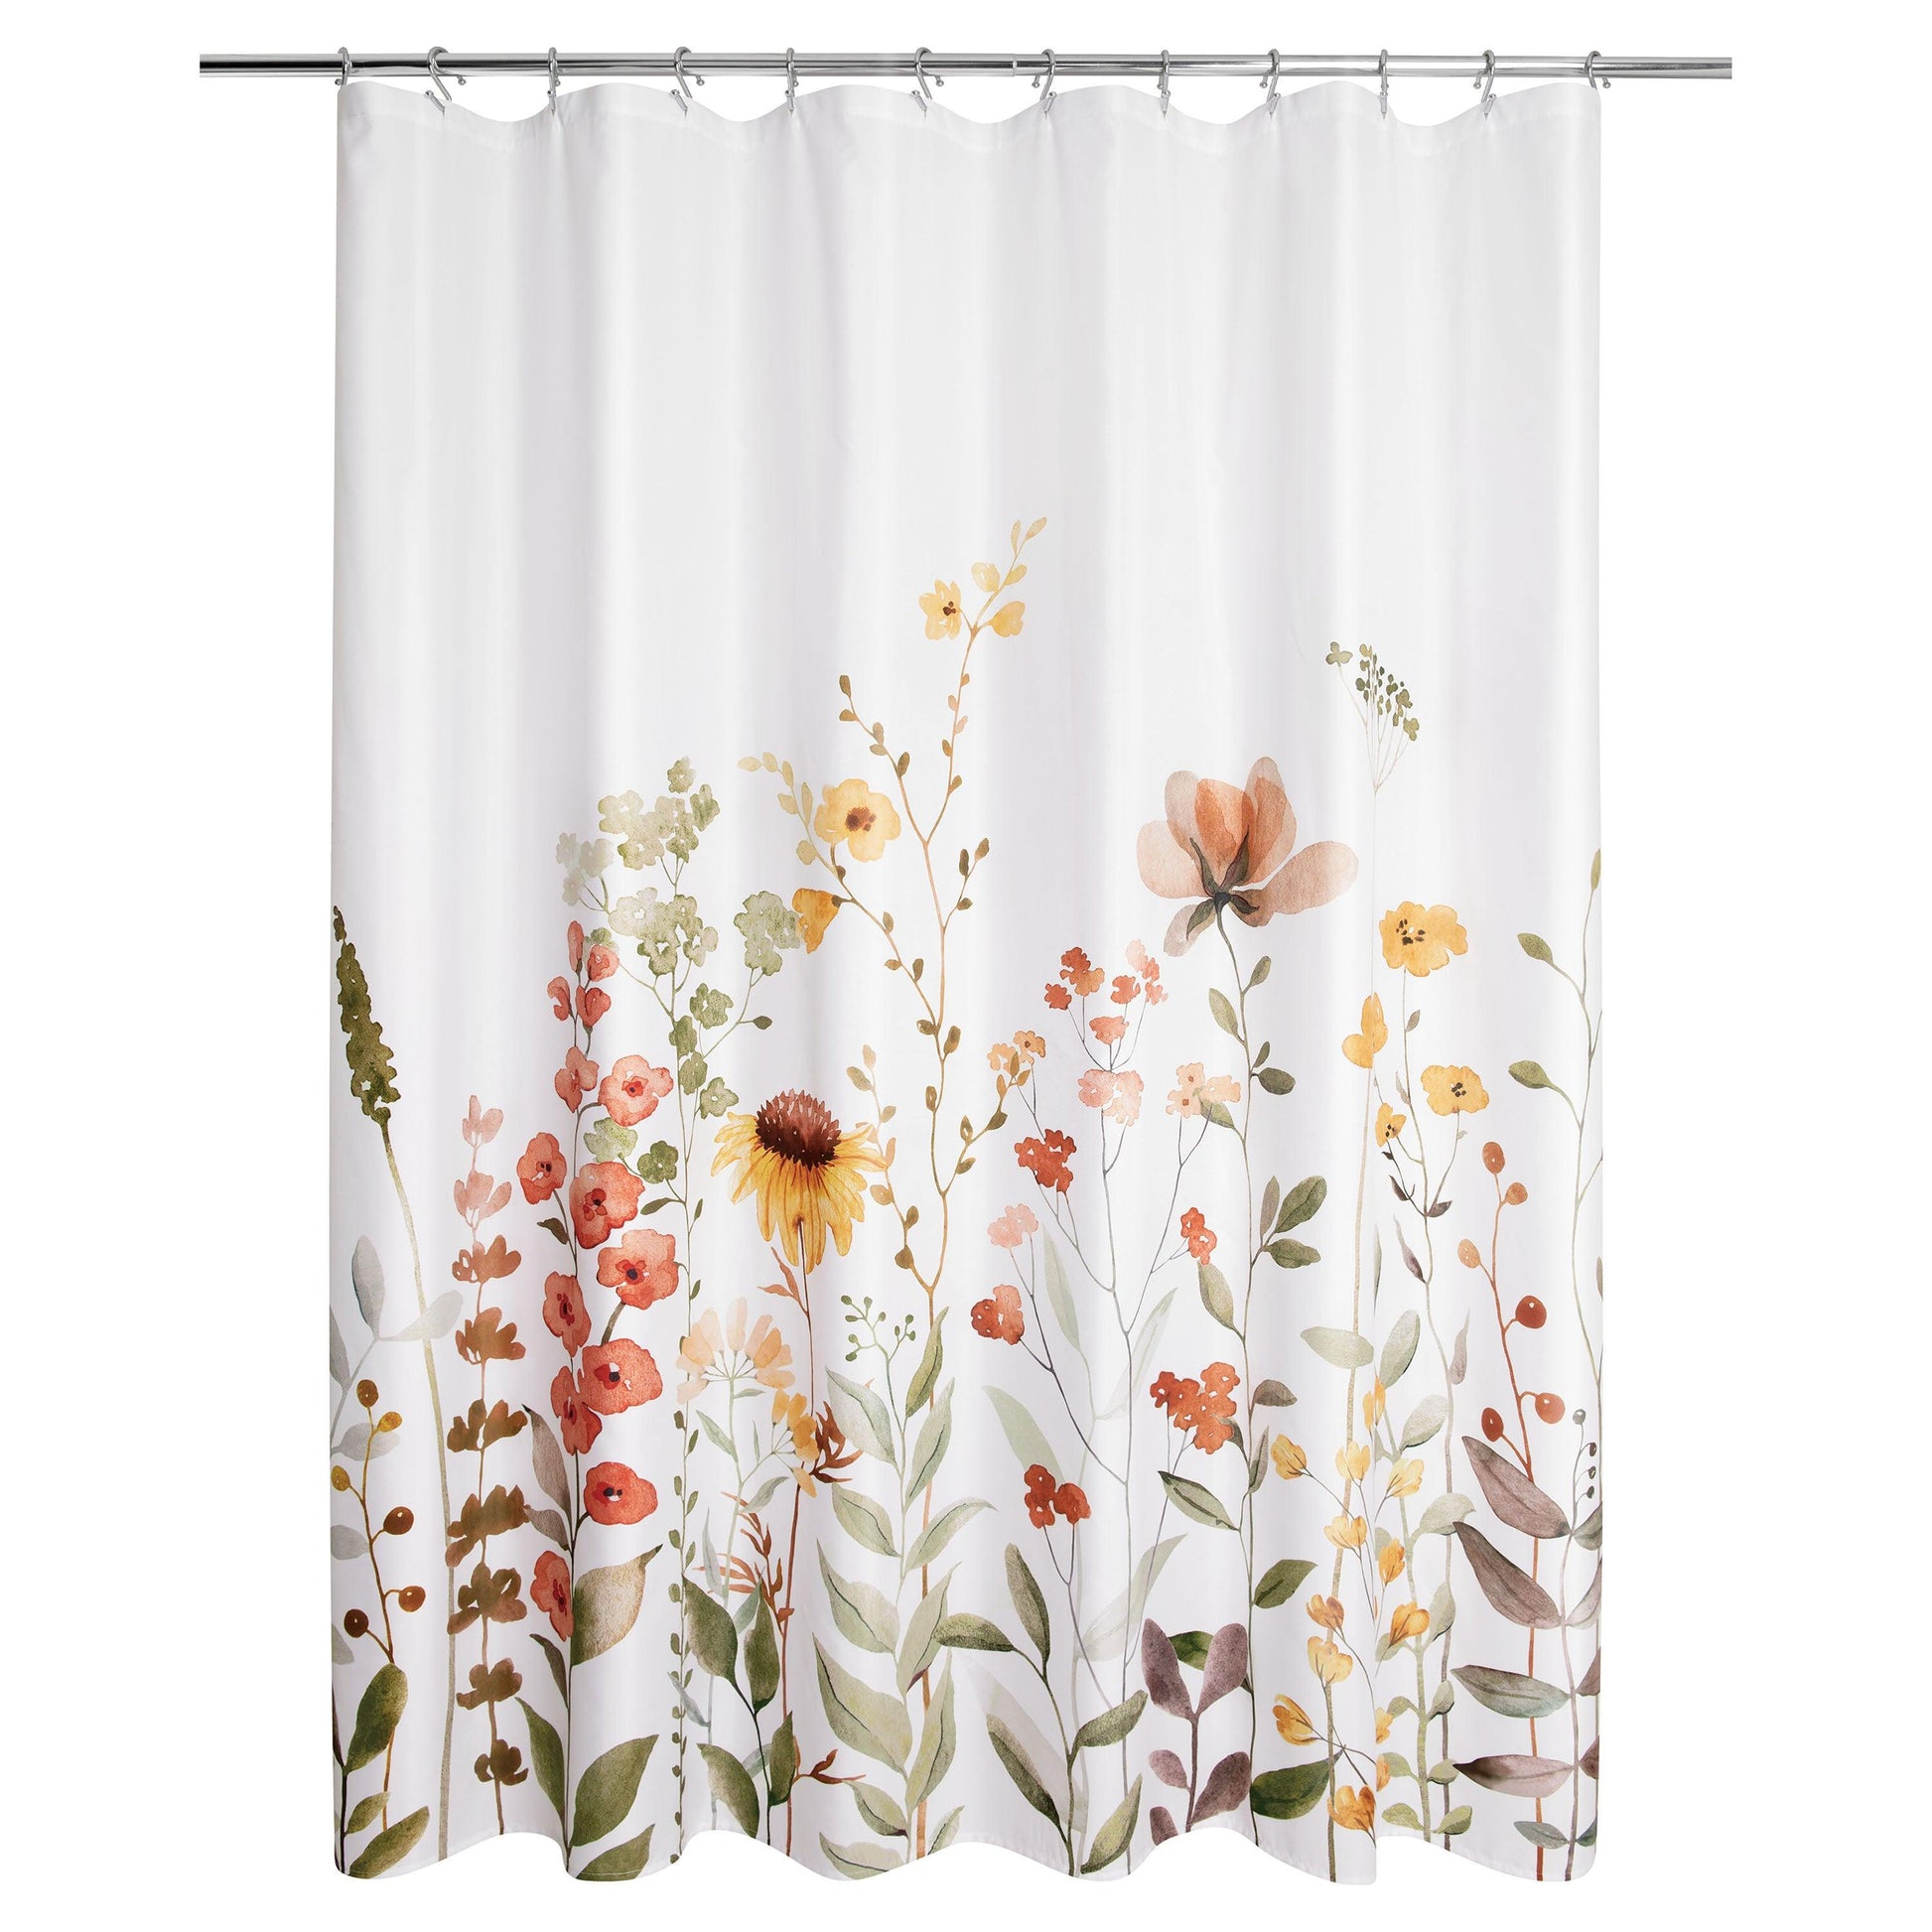 Wild Garden Floral Shower Curtain - Allure Home Creation